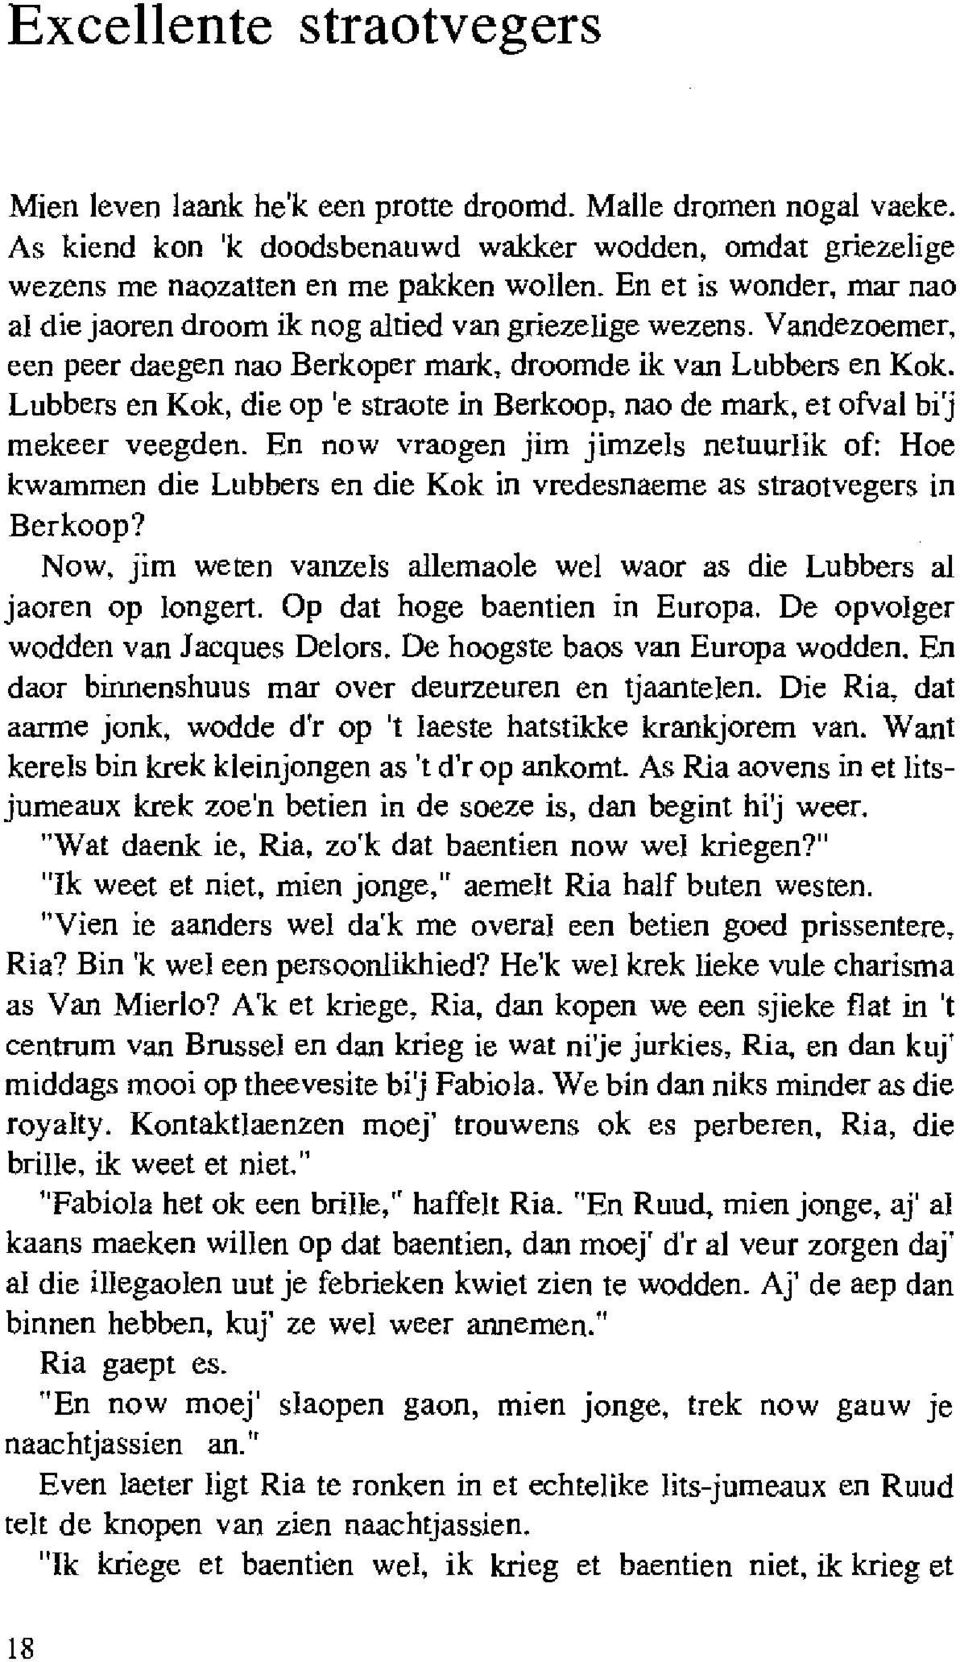 Lubbers en Kok, die op 'e straote in Berkoop, nao de mark, et ofval bij mekeer veegden.